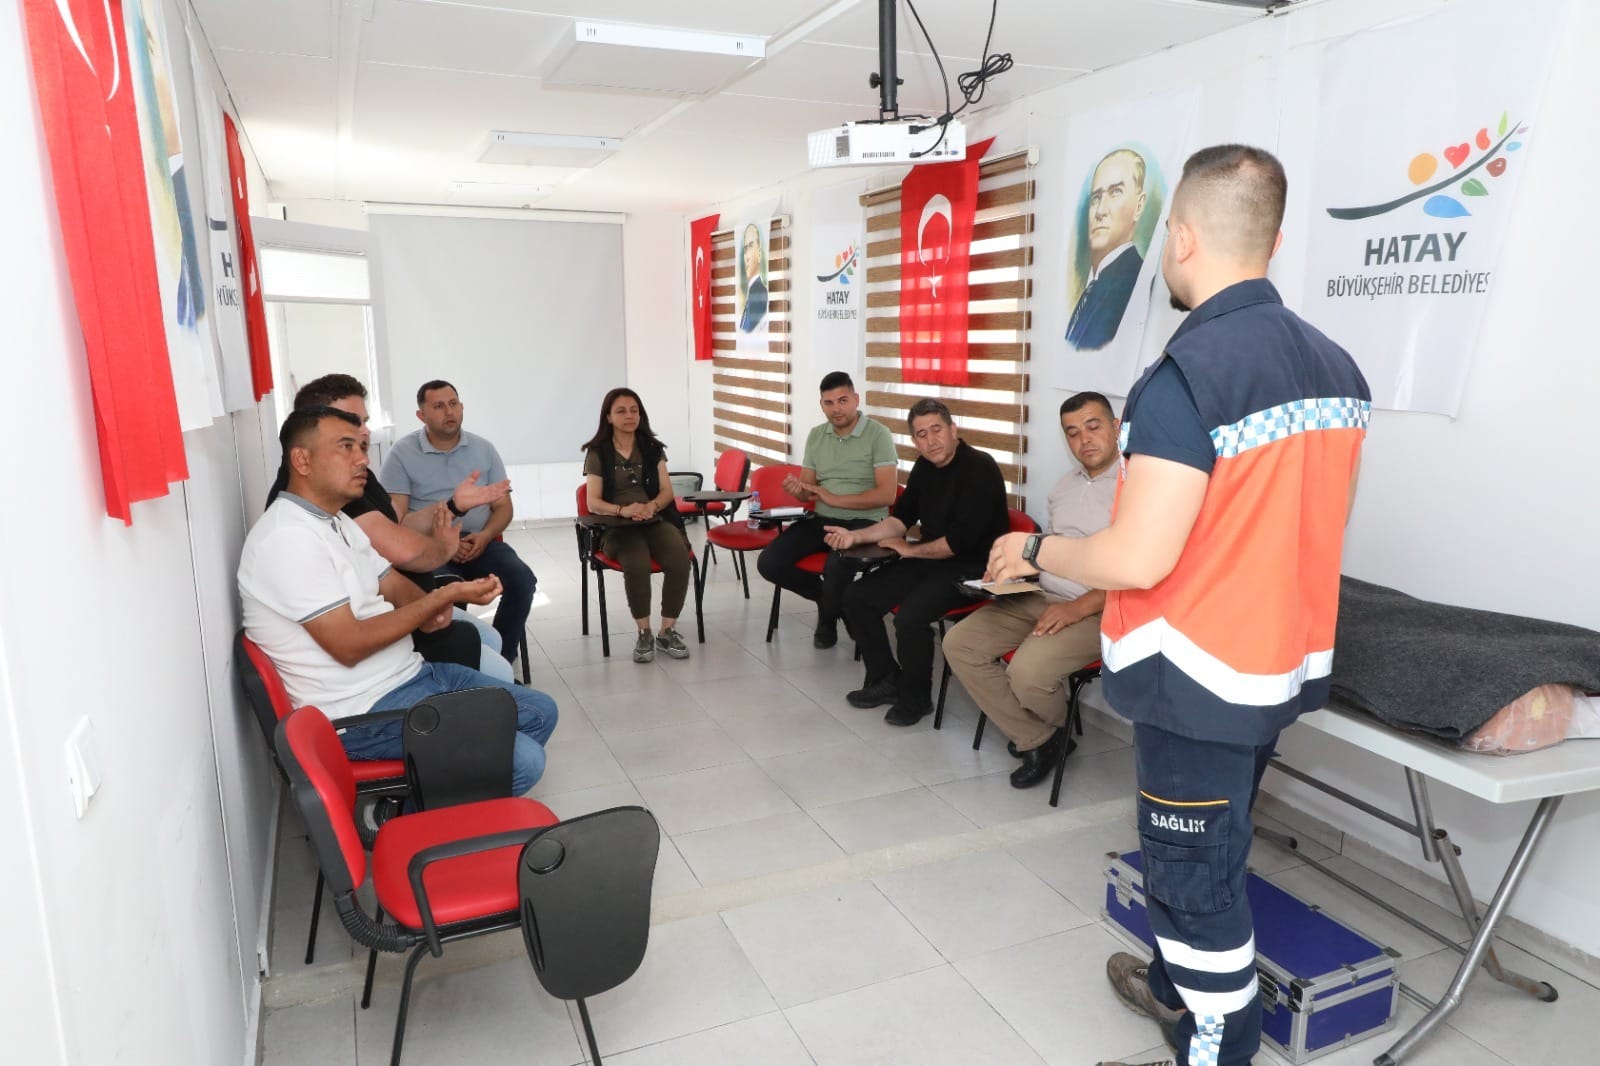 Hatay Büyükşehir’den personel ve vatandaşlara ilk yardım eğitimleri